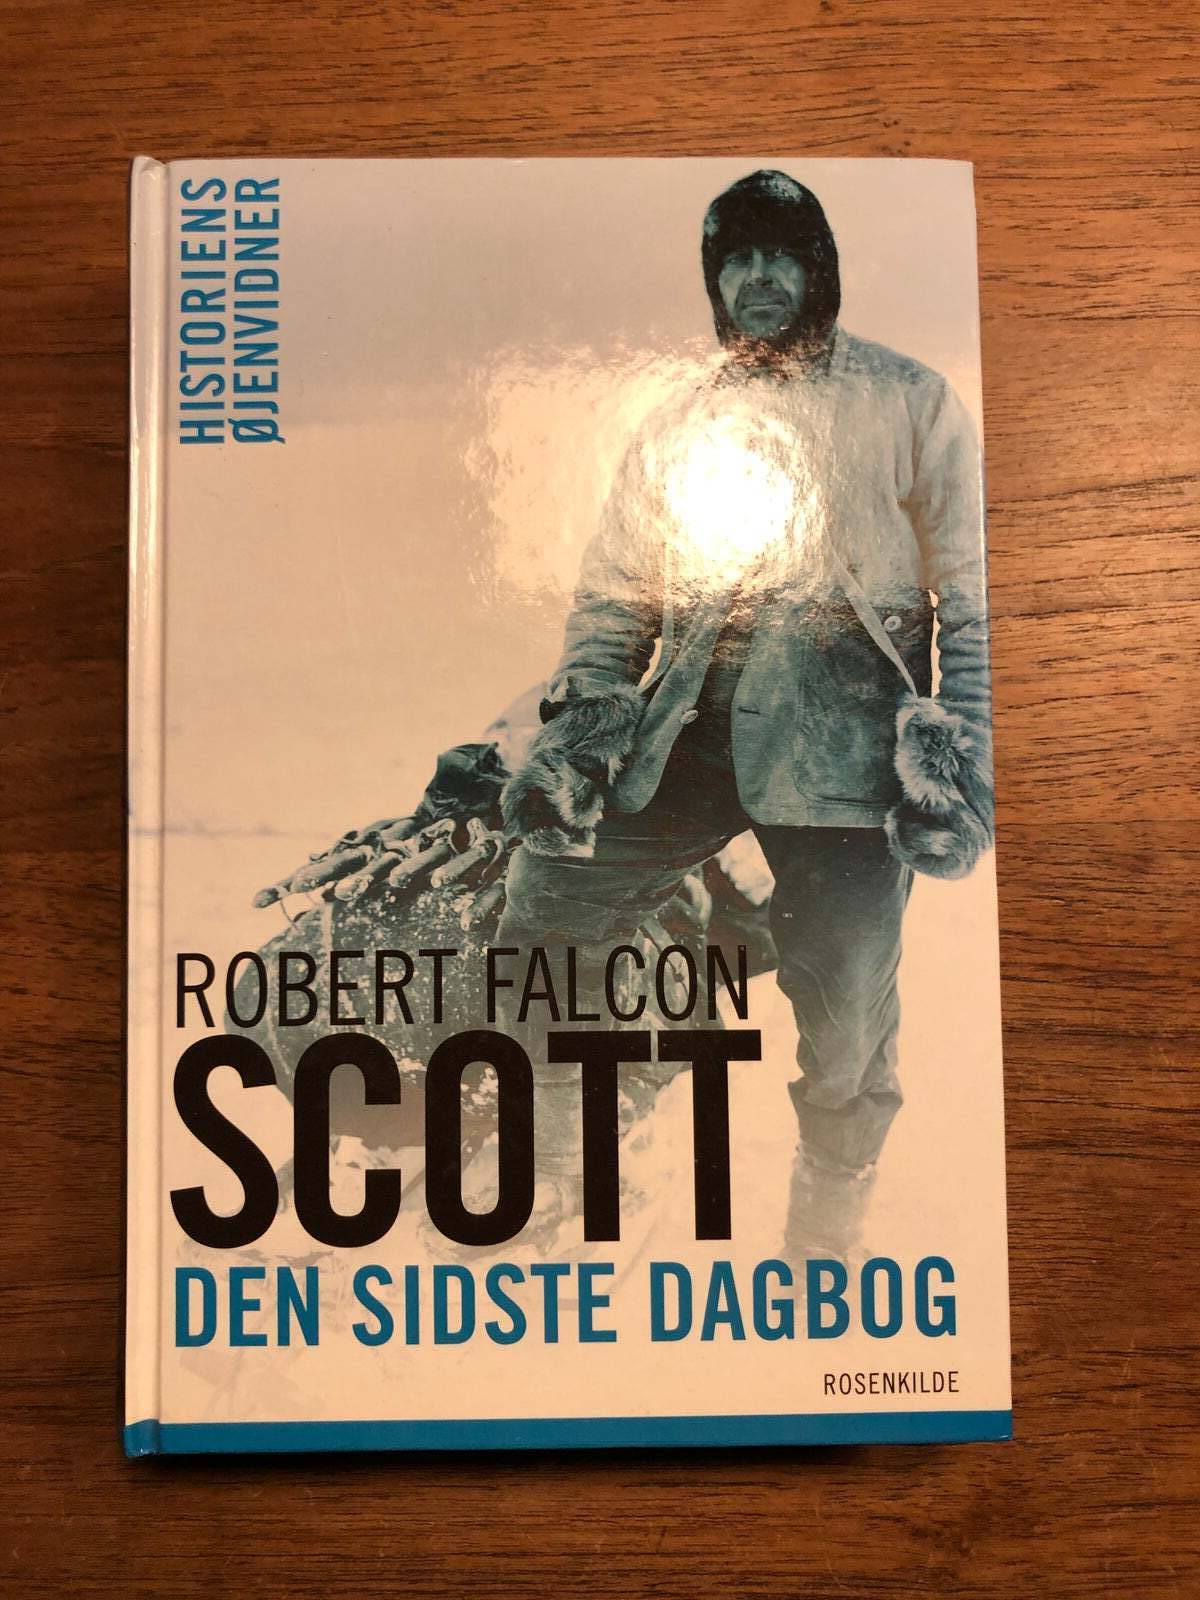 Bore gaben med uret Den sidste dagbog, Robert Falcon Scott, emne: historie og samfund – dba.dk  – Køb og Salg af Nyt og Brugt